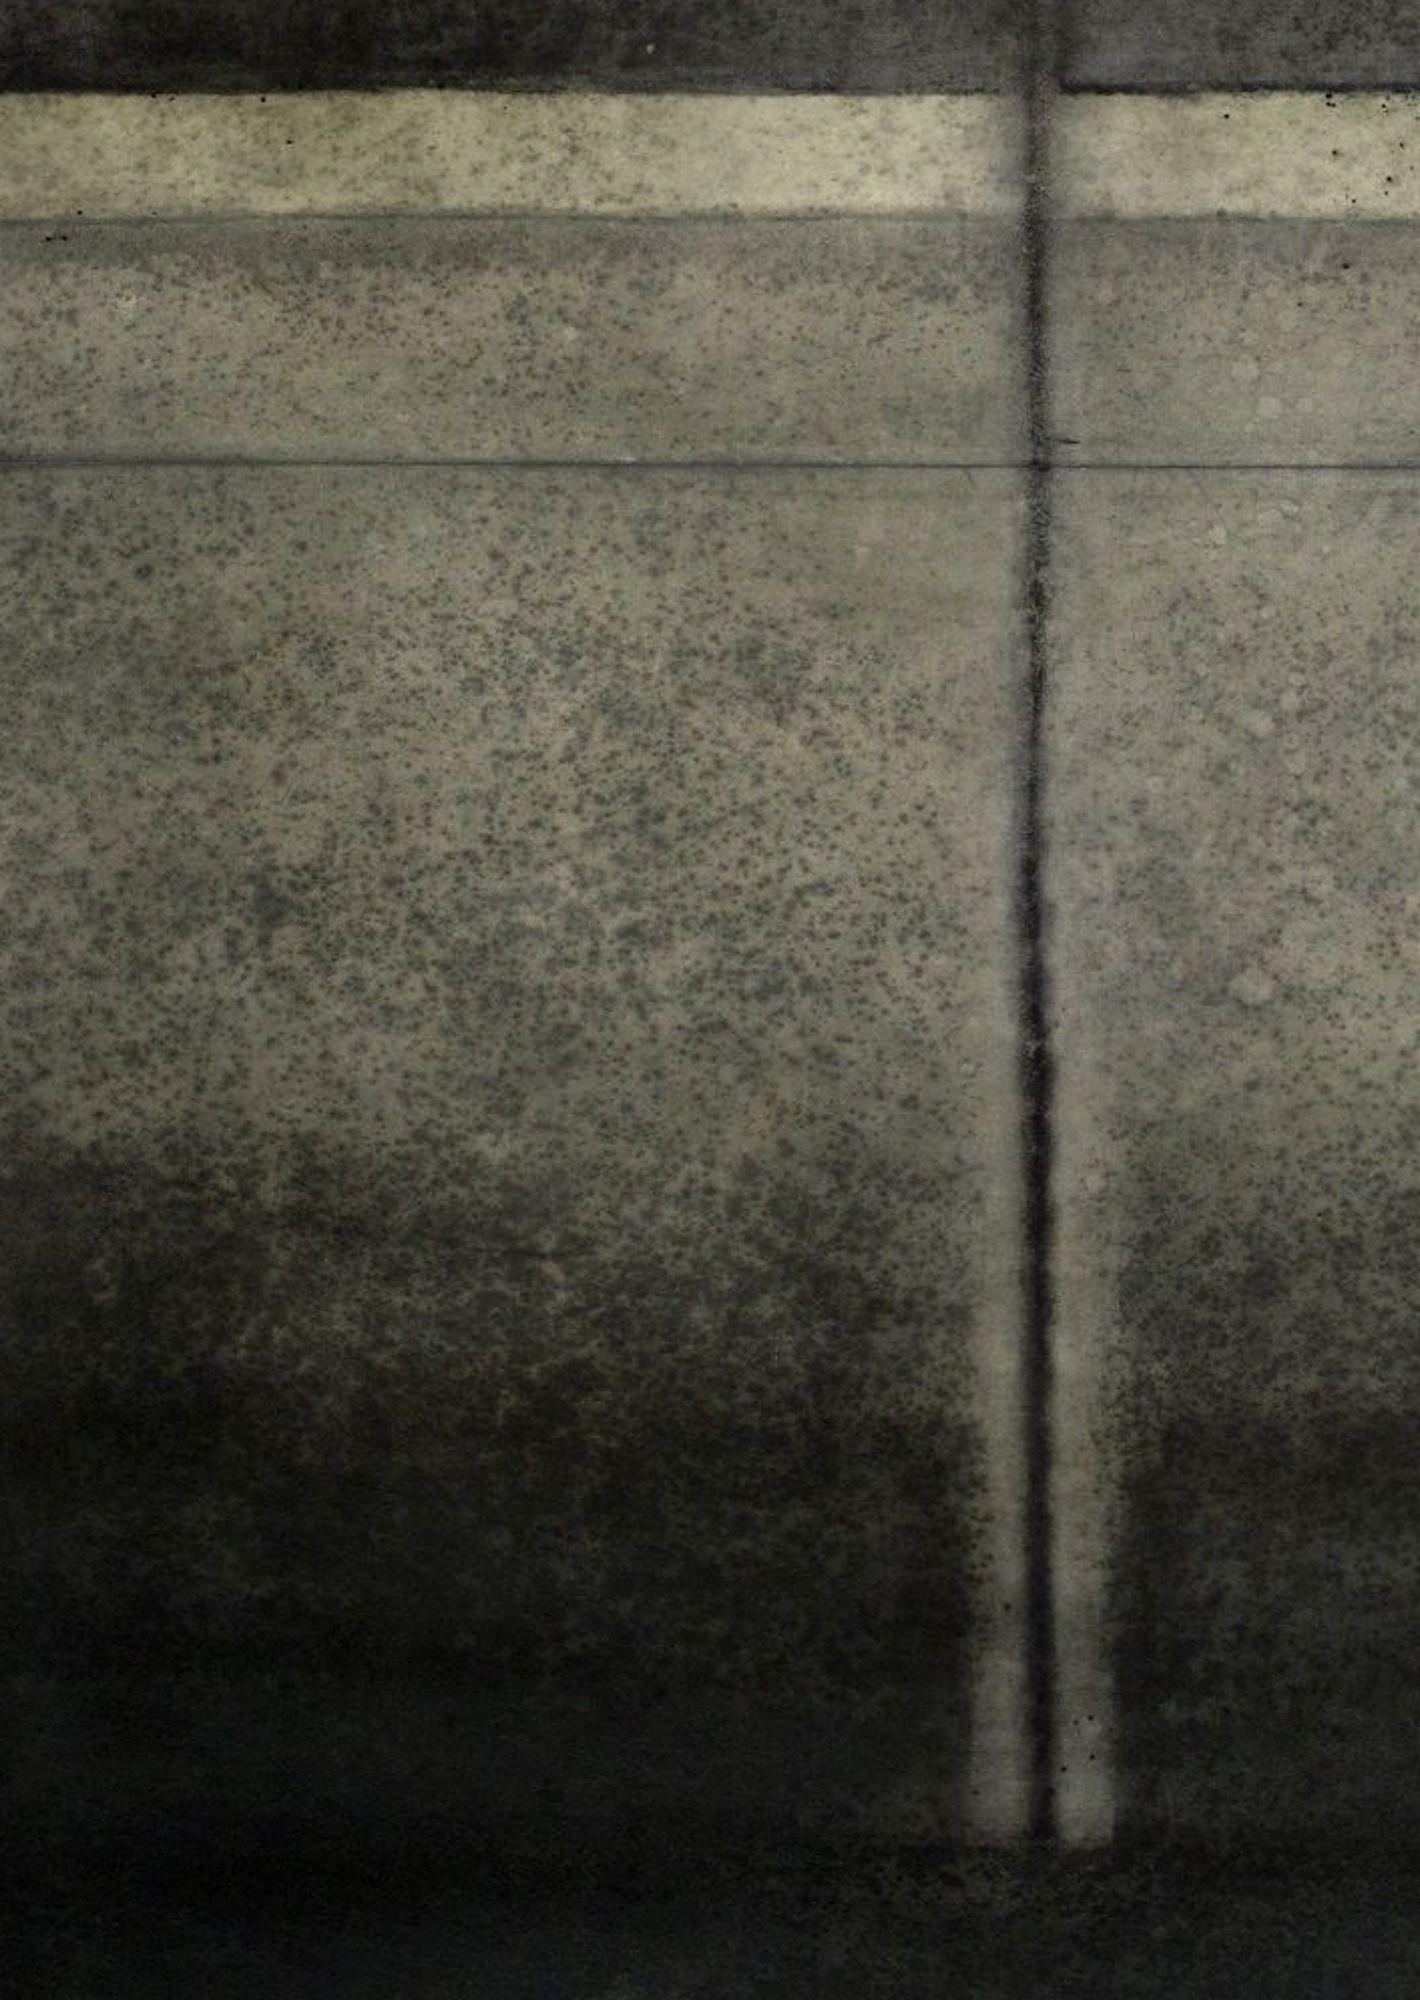 Untitled LIV ist ein einzigartiges Gemälde des zeitgenössischen Künstlers Ferle in Öl auf freistehender Leinwand mit den Maßen 200 × 140 cm (78,7 × 55,1 in).
Das Kunstwerk ist signiert, wird ungerahmt verkauft und wird mit einem Echtheitszertifikat